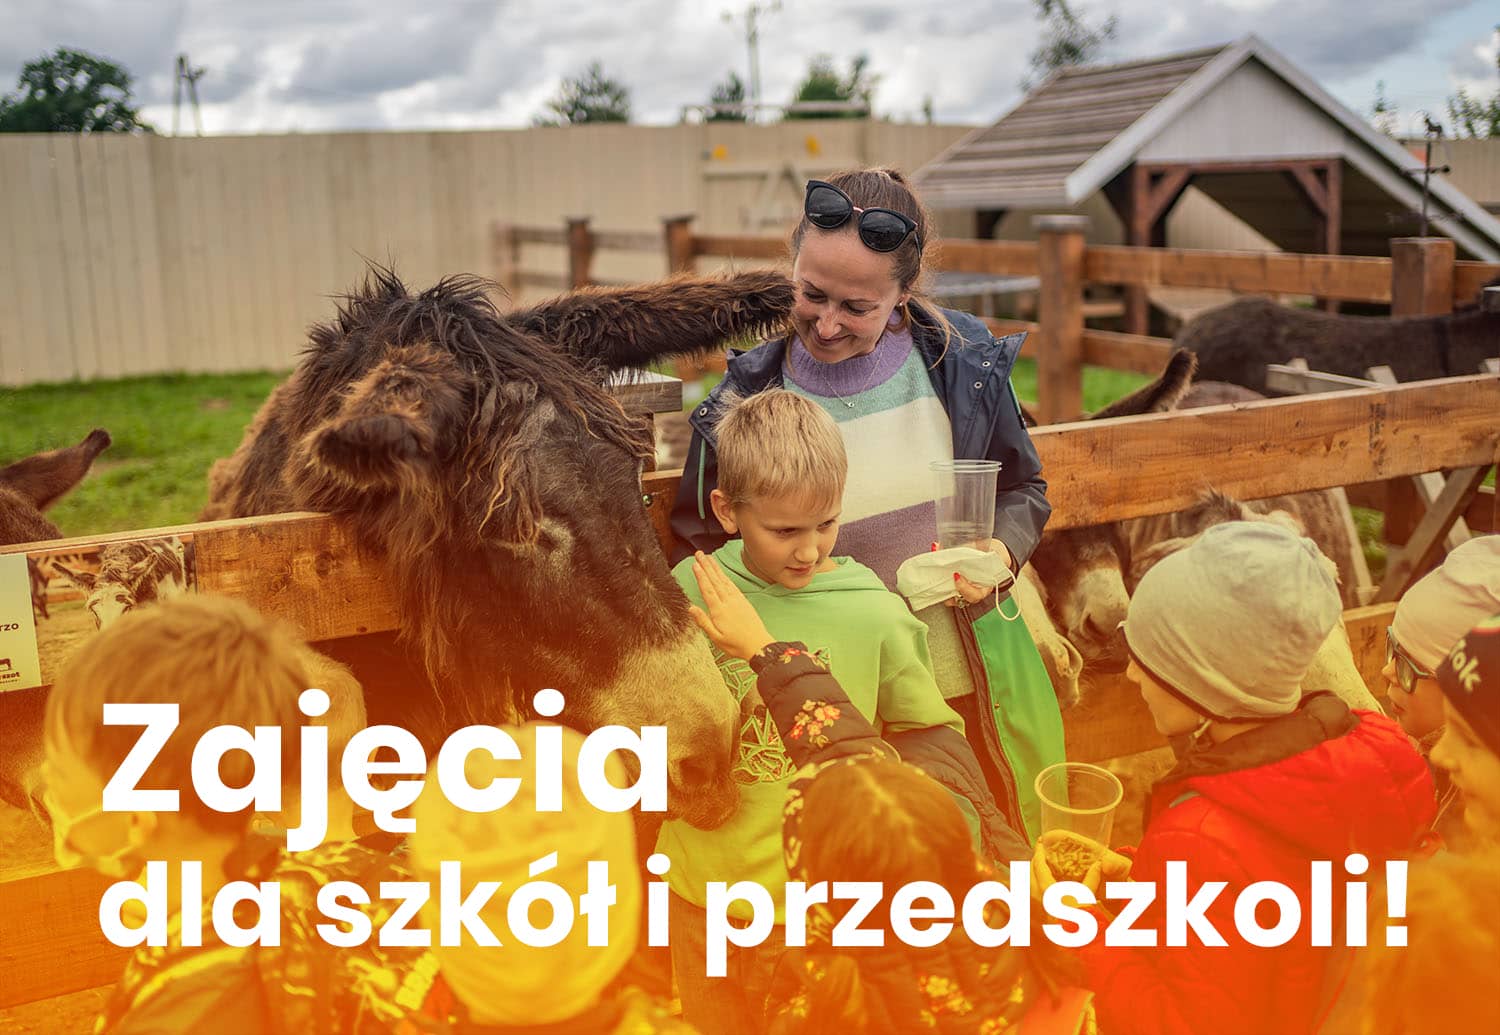 DonkeySzot Mini ZOO w Rogozine. zajęcia dla szkół i przedszkoli